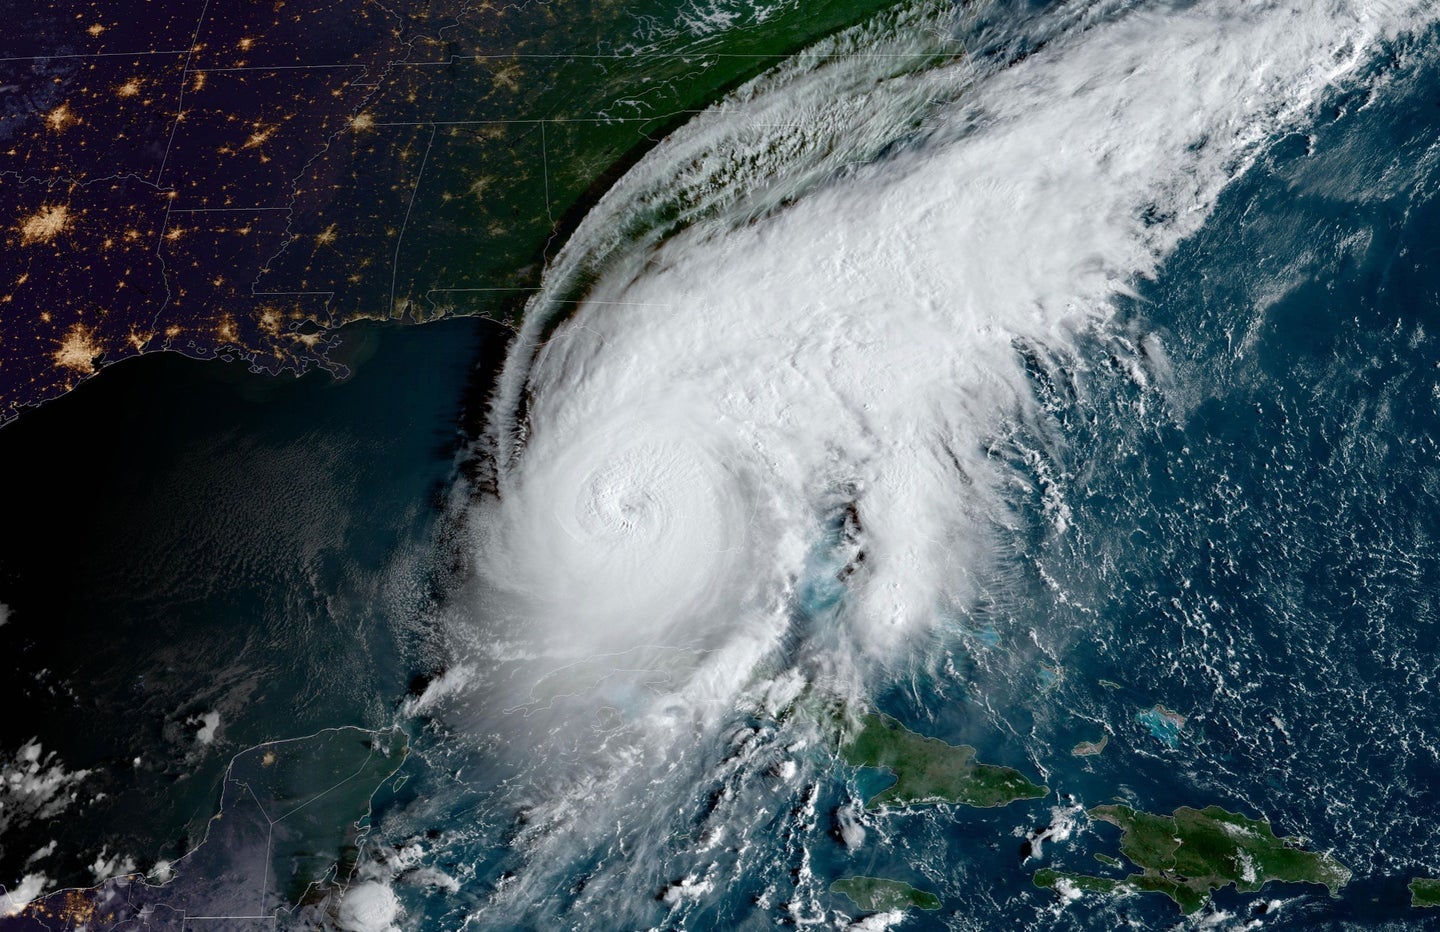 A satellite image of Hurricane Ian making landfall on the southwest coast of Florida on Wednesday, September 28.